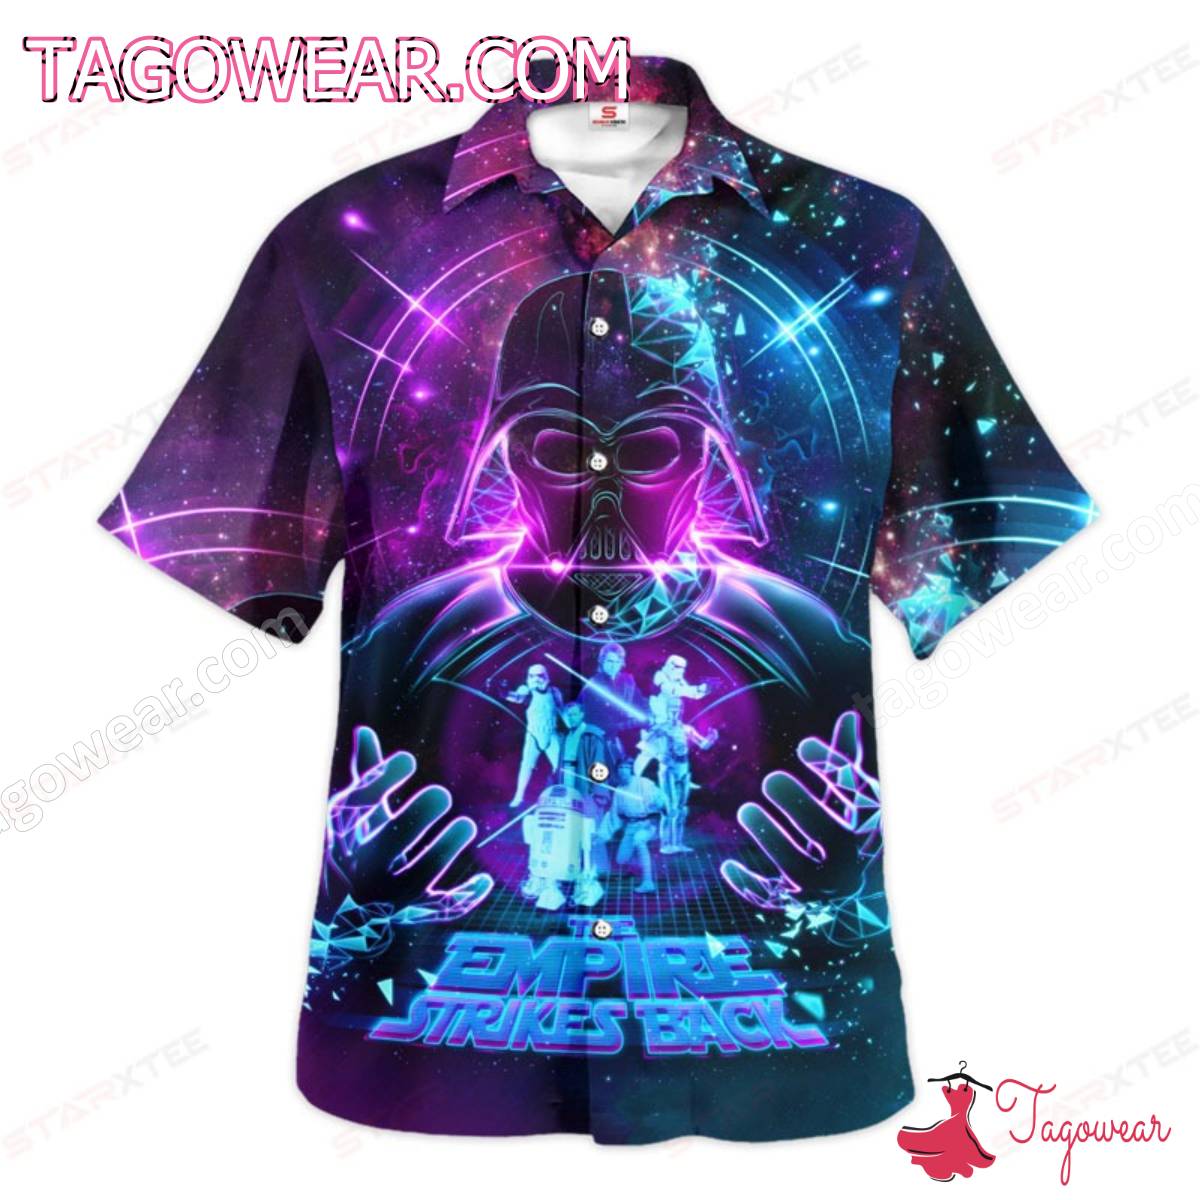 Star Wars Darth Vader The Empire Strikes Back Galaxy Hawaiian Shirt